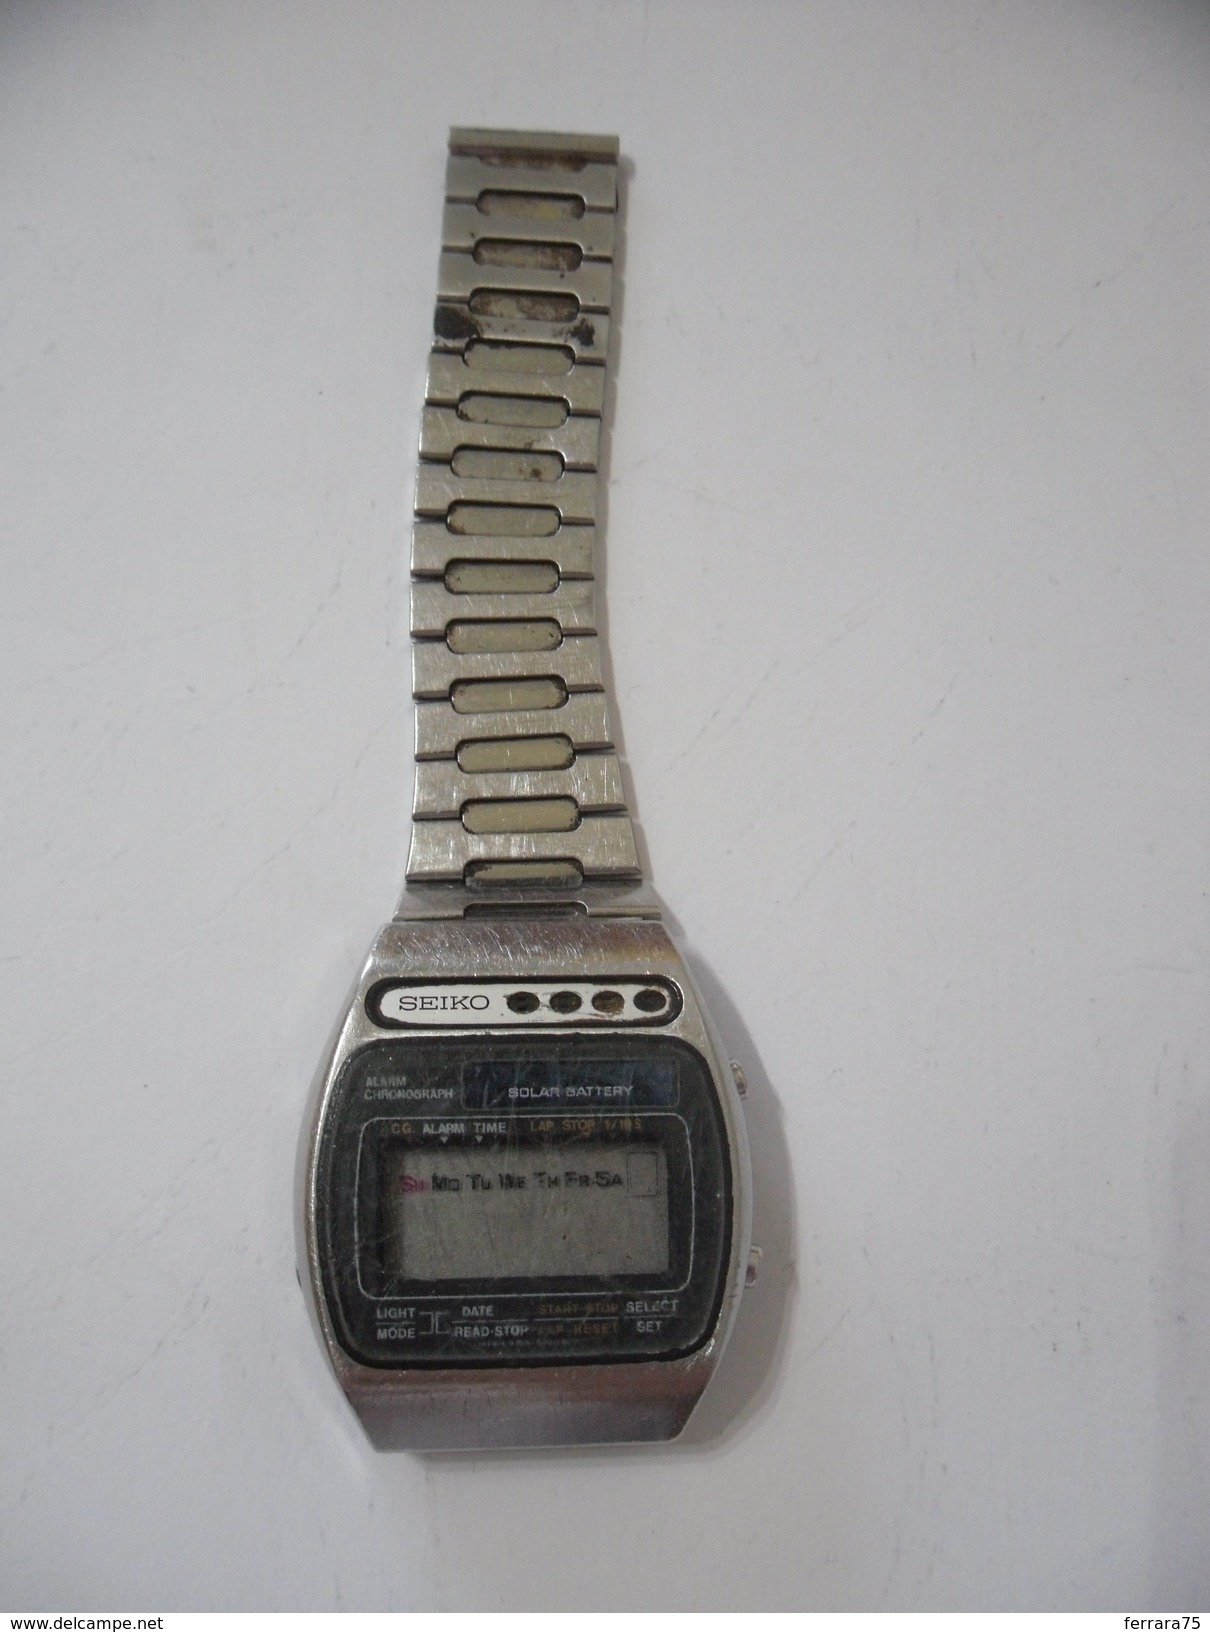 Watches: bracket - SEIKO VINTAGE WATCH SEIKO LCD BATTERY SOLAR